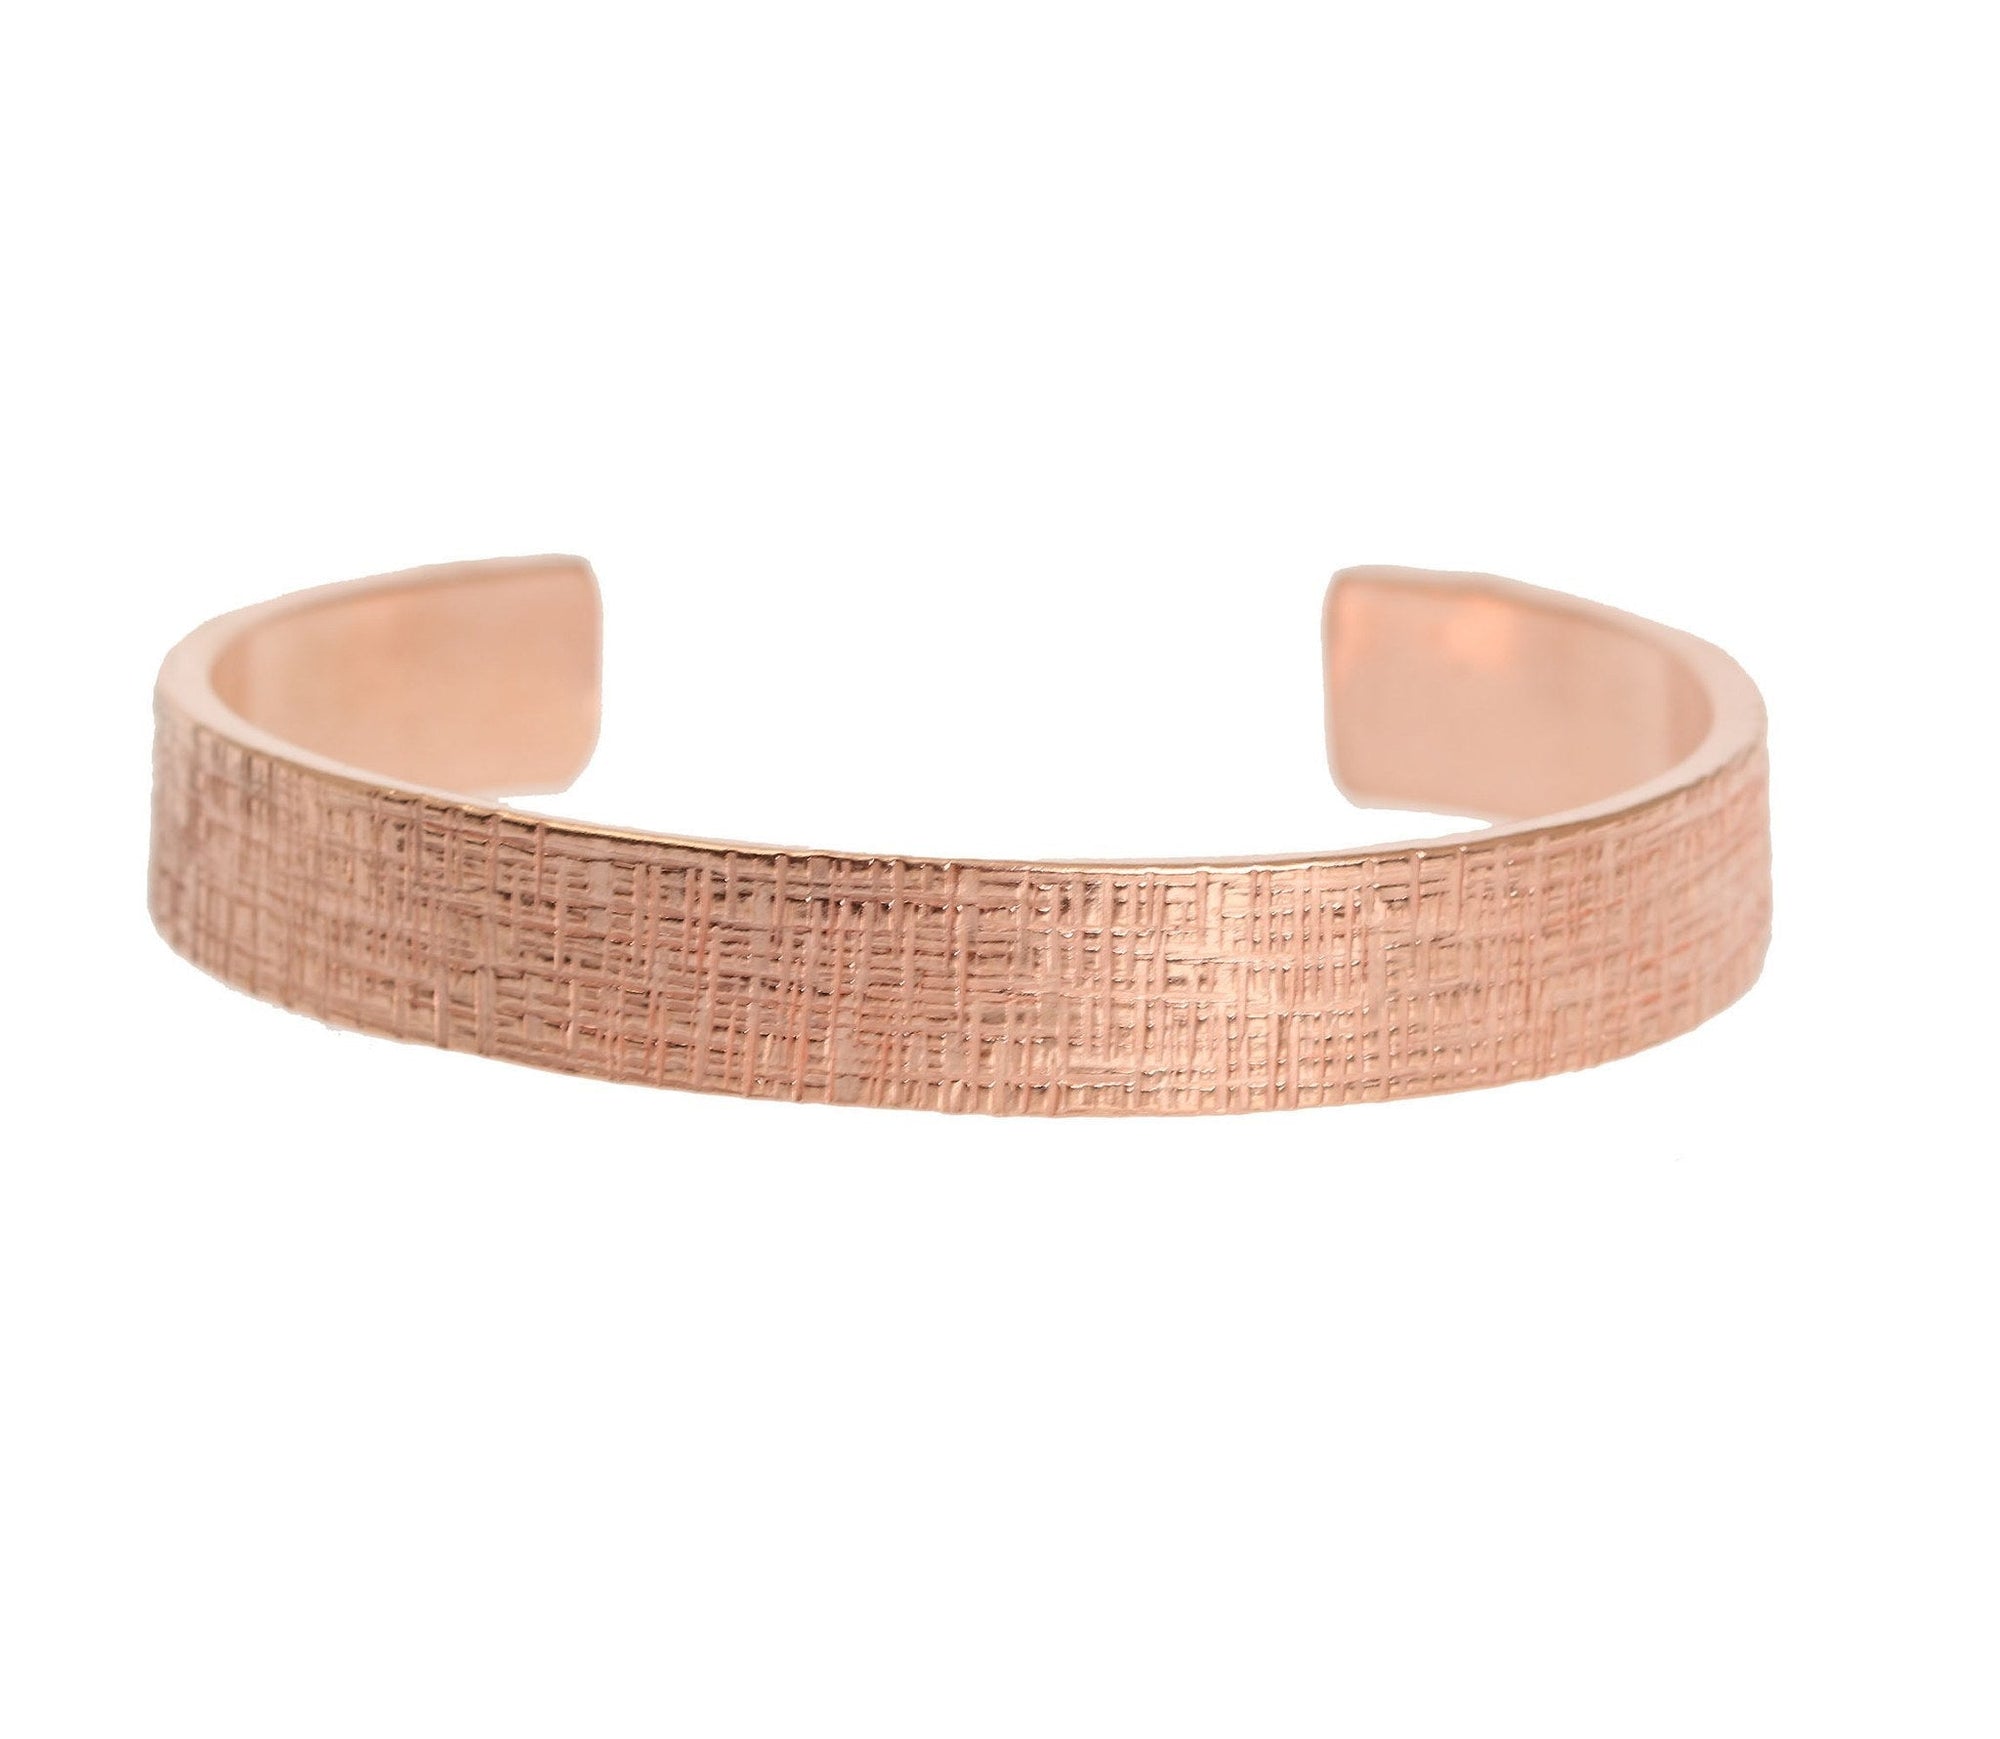 10mm Wide Linen Copper Cuff Bracelet Laying Flat